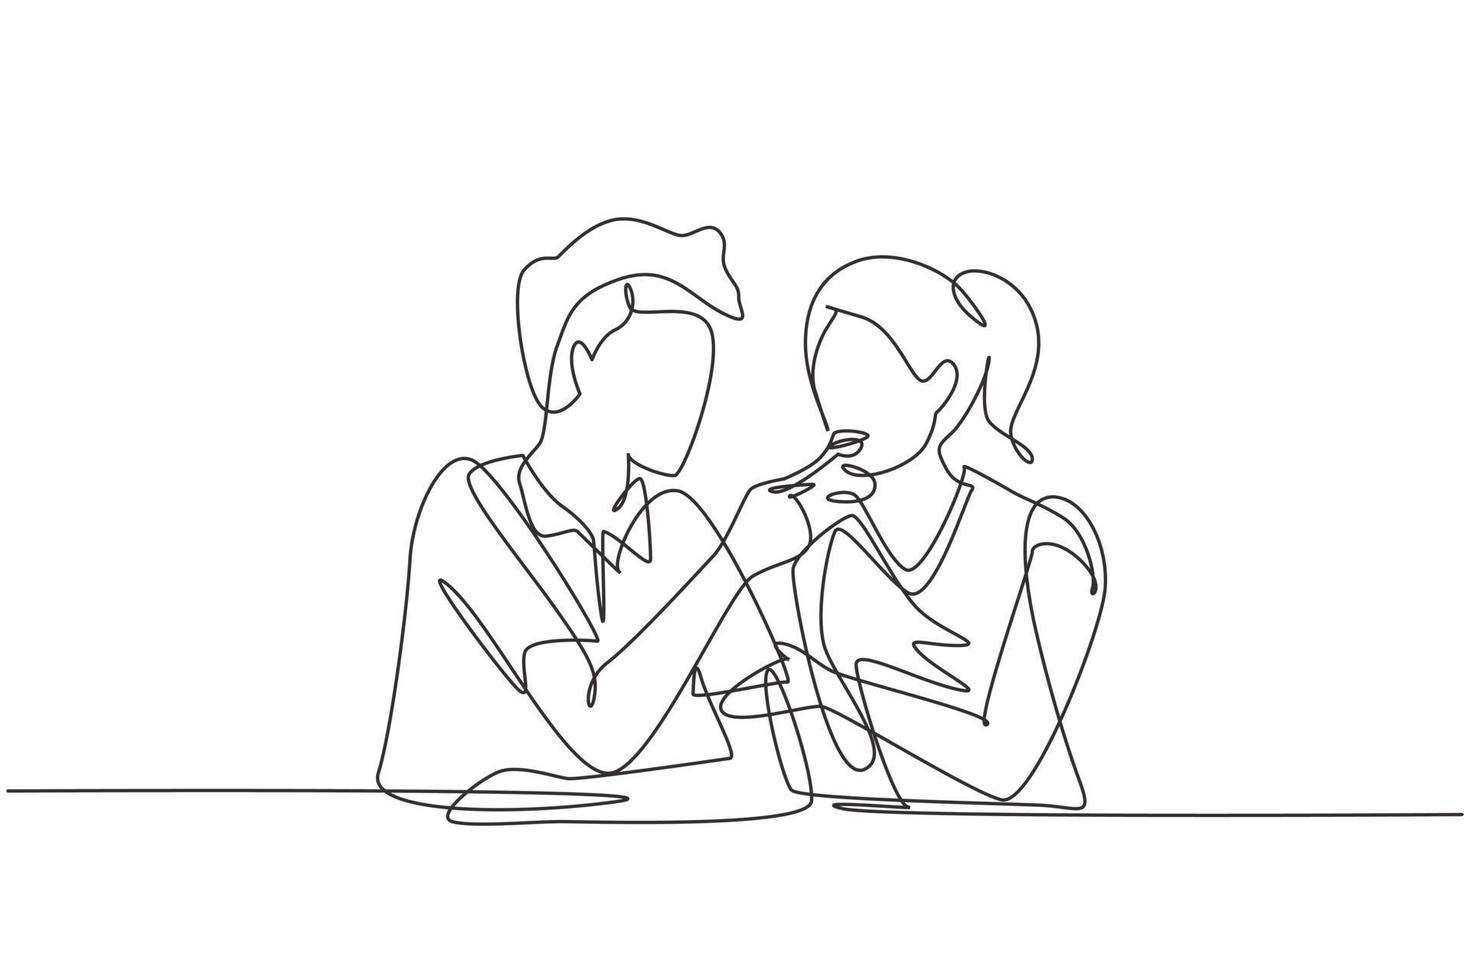 único desenho de linha contínua homem romântico alimenta sua esposa. jovem casal feliz jantando juntos no restaurante. comemorar aniversários de casamento. ilustração em vetor desenho gráfico de uma linha